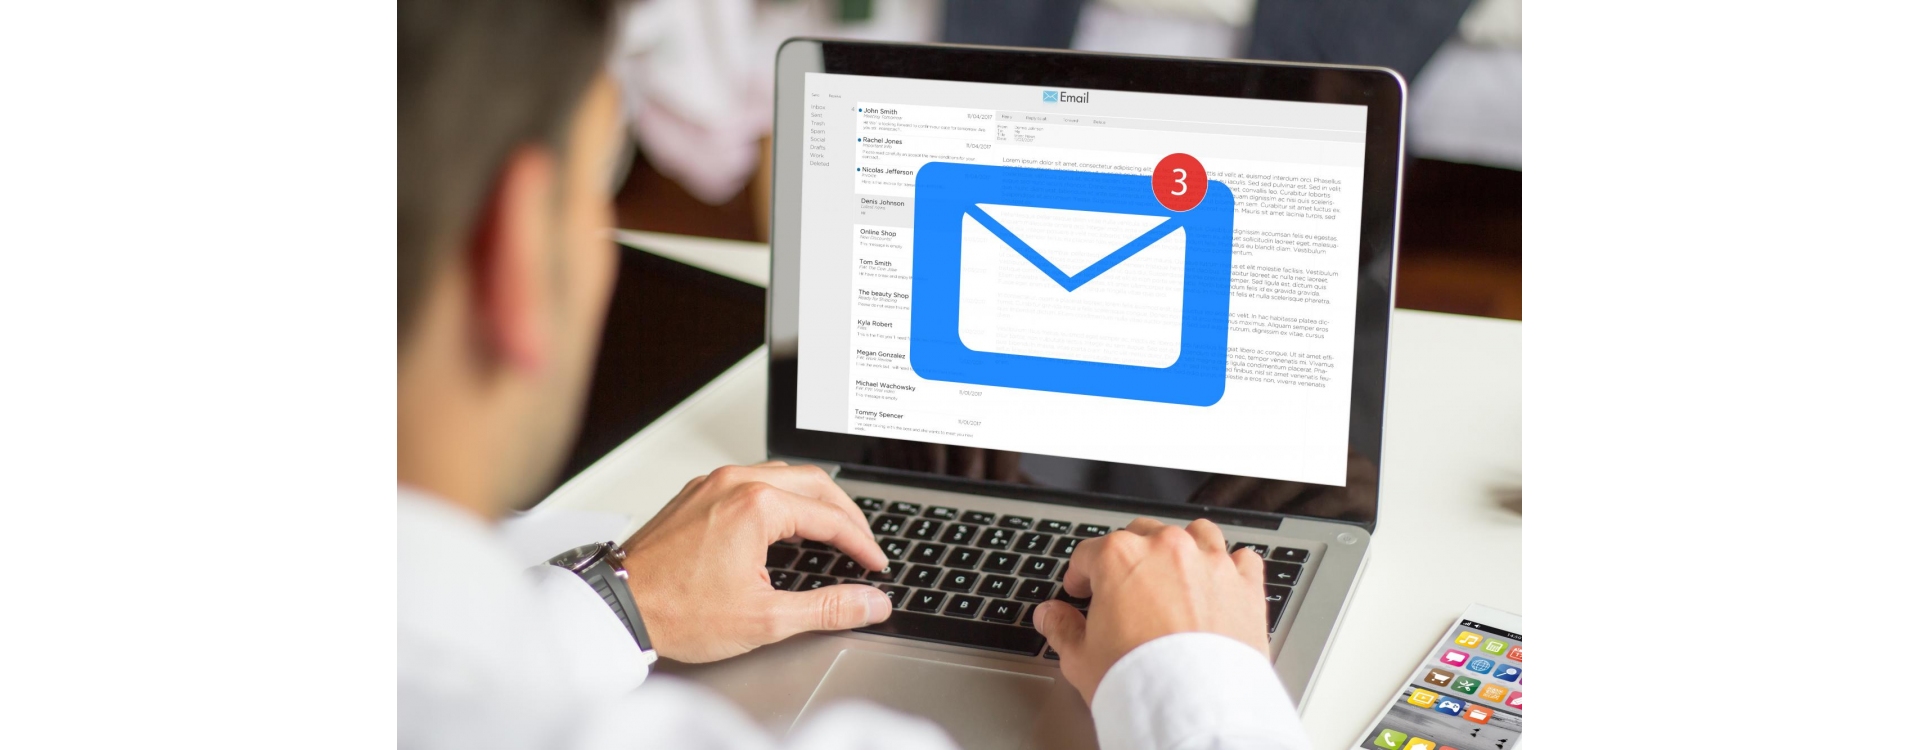 E-mail profissional: poderosa ferramenta de comunicação 